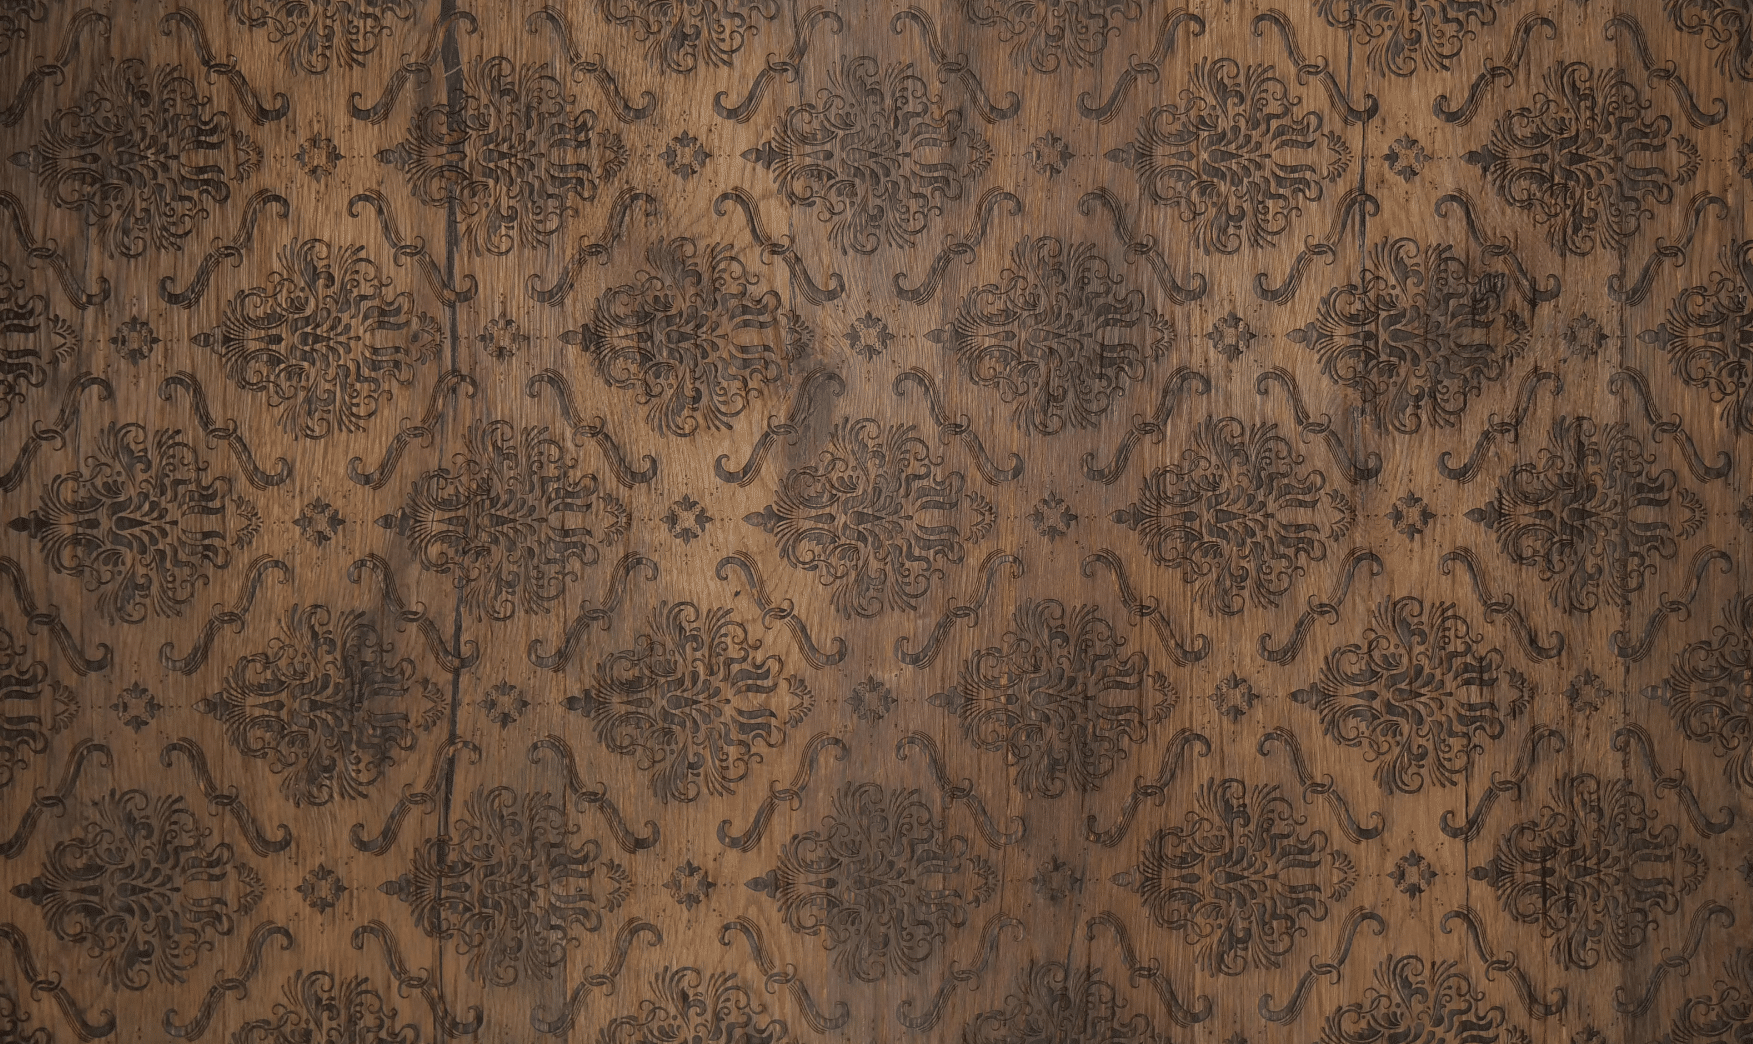 Keplinger zeigt ein schönes Muster, dass durch Holzgravur entstanden ist.